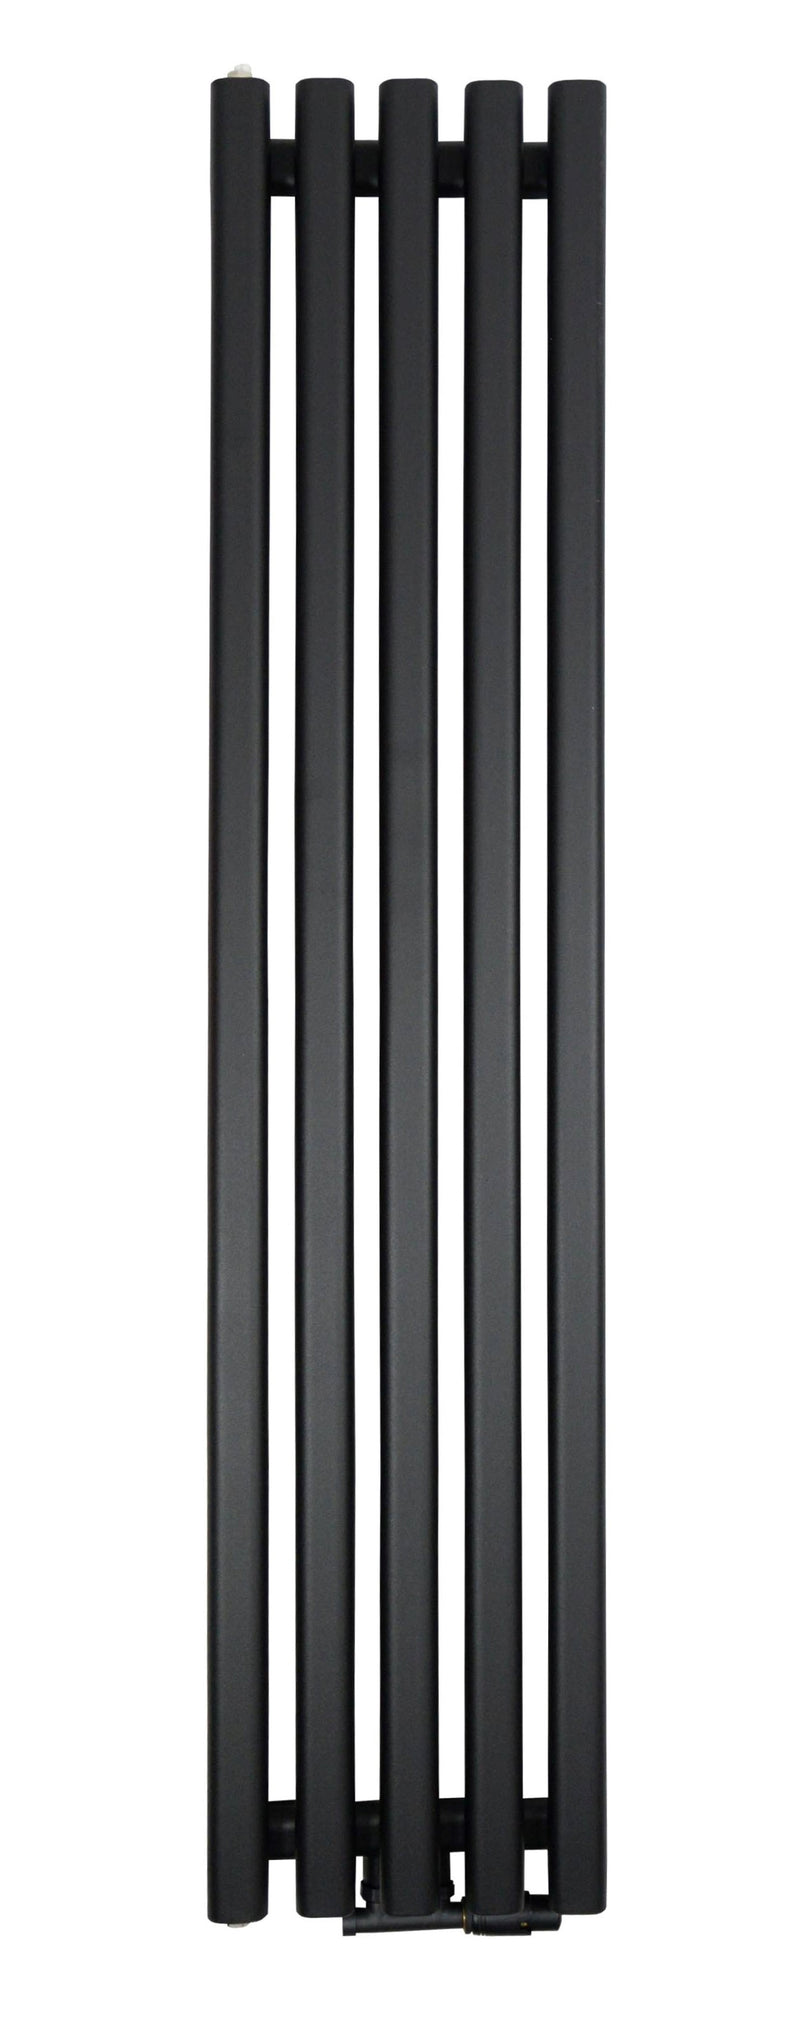 ZVR18033B - Schwarzer vertikaler Heizkörper 180/33